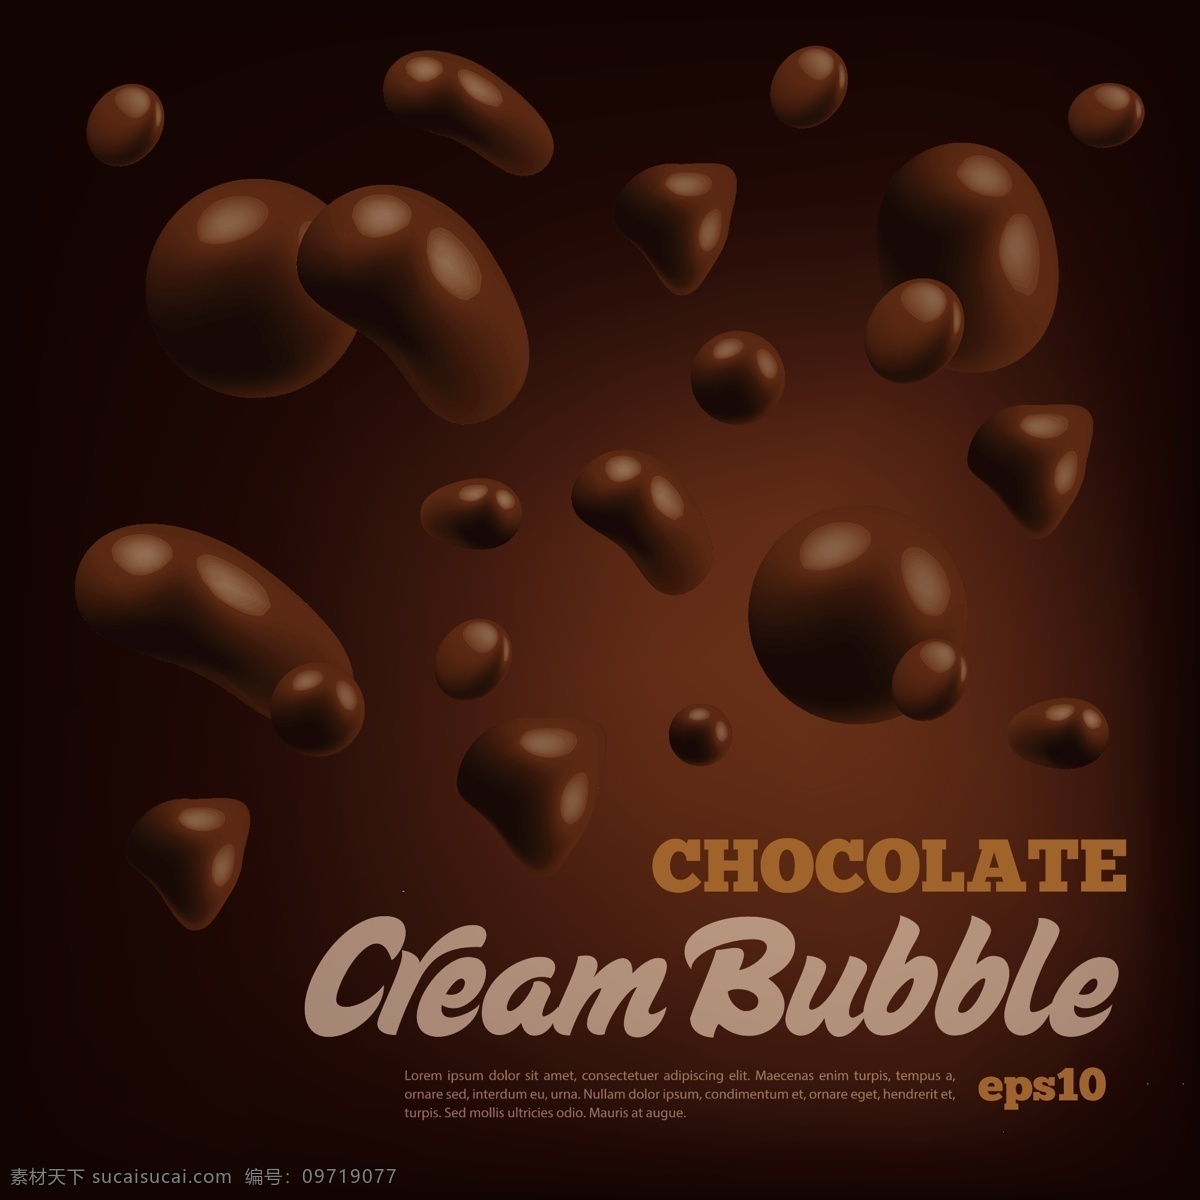 巧克力 广告 海报 食物 背景 美食背景 美食广告 巧克力广告 创意广告 水纹 纹理 矢量素材 食物海报